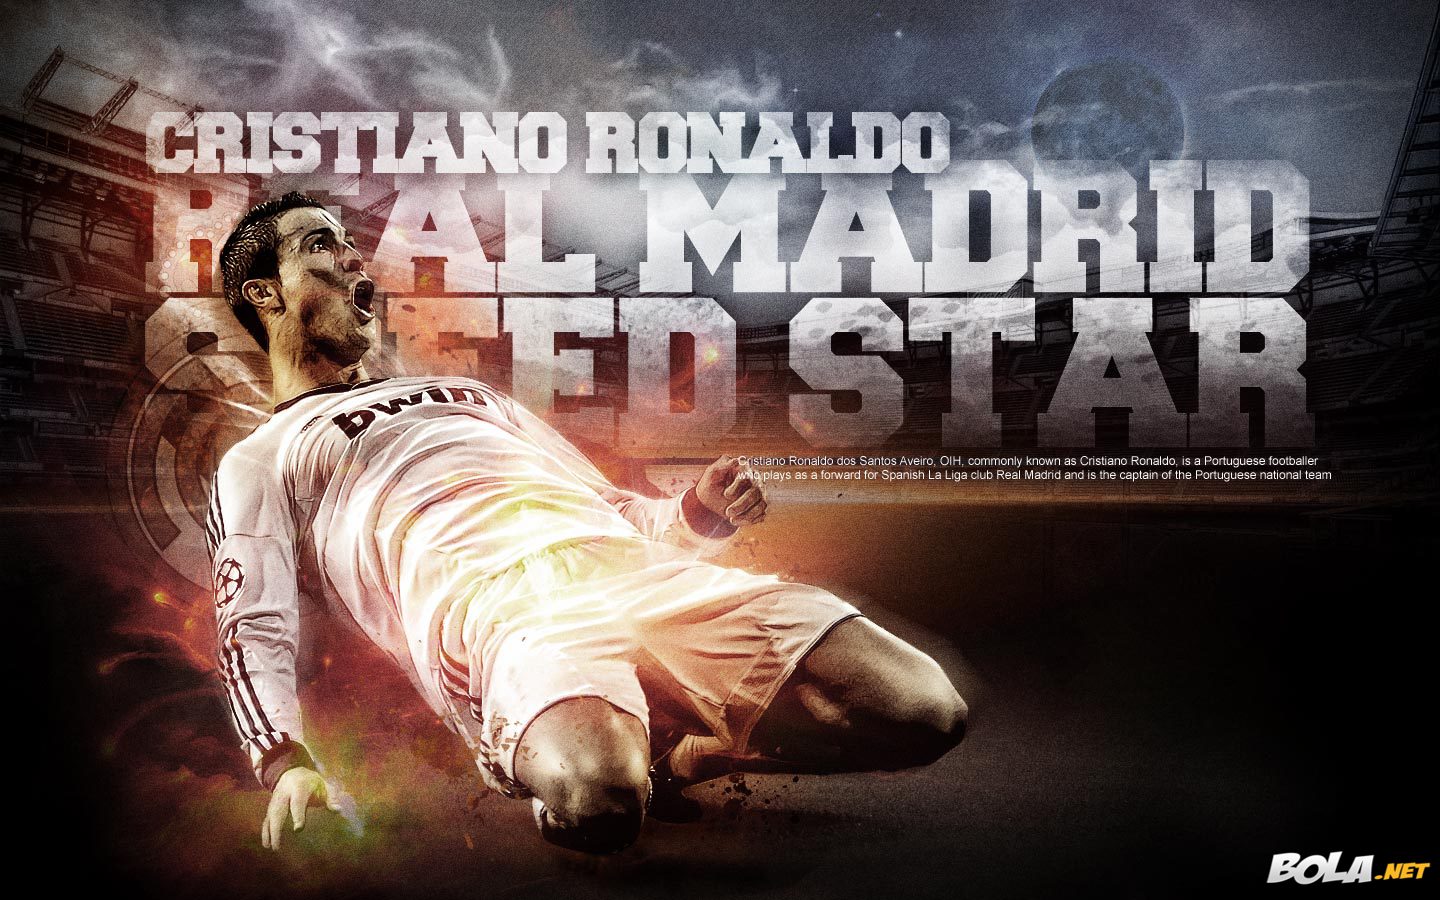 Deskripsi : Wallpaper Cristiano Ronaldo, size: 1440x900